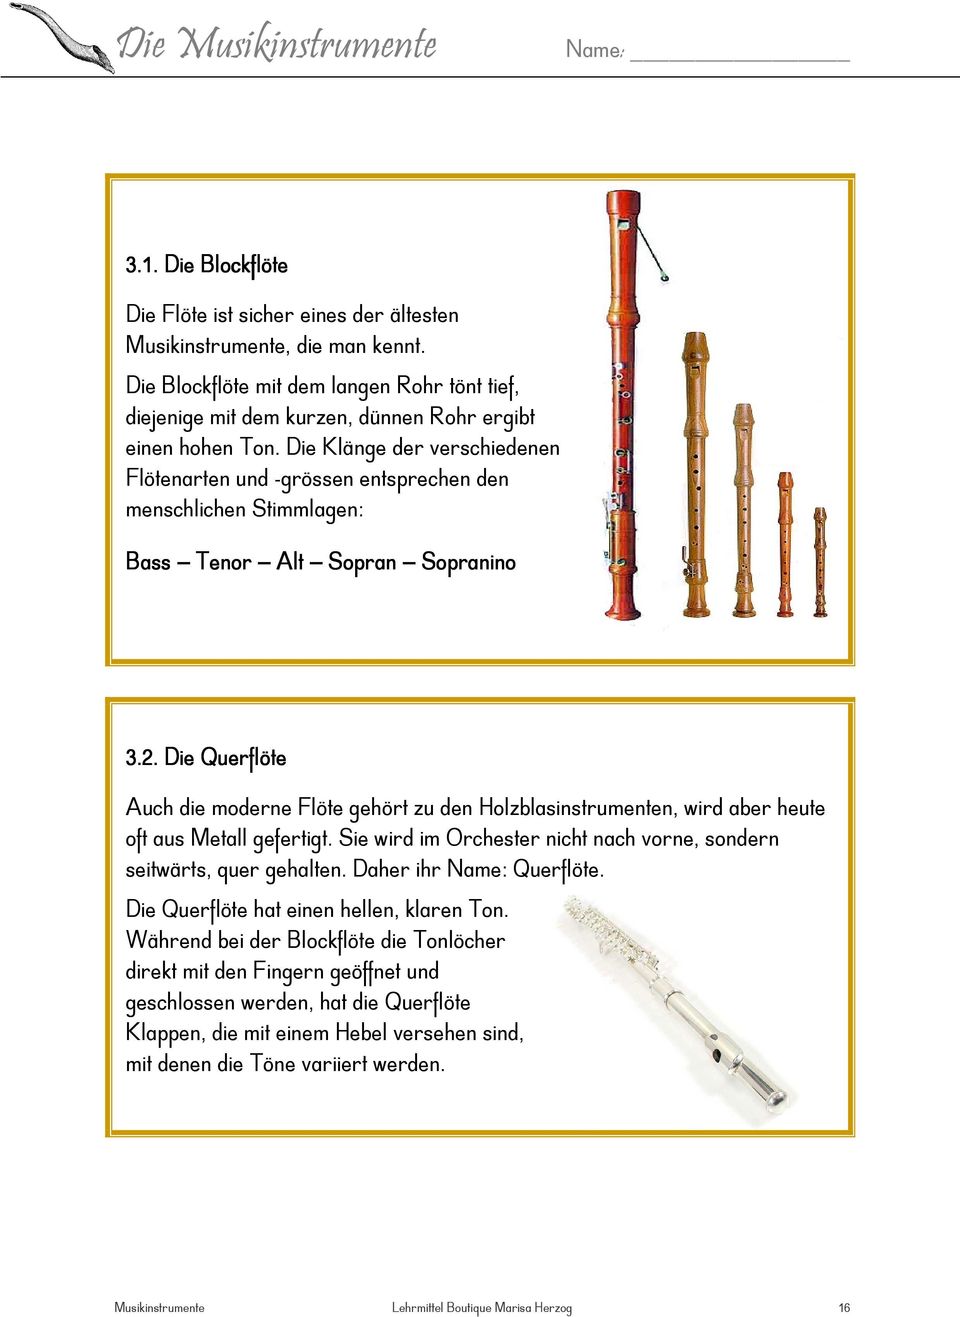 Die Querflöte Auch die moderne Flöte gehört zu den Holzblasinstrumenten, wird aber heute oft aus Metall gefertigt. Sie wird im Orchester nicht nach vorne, sondern seitwärts, quer gehalten.